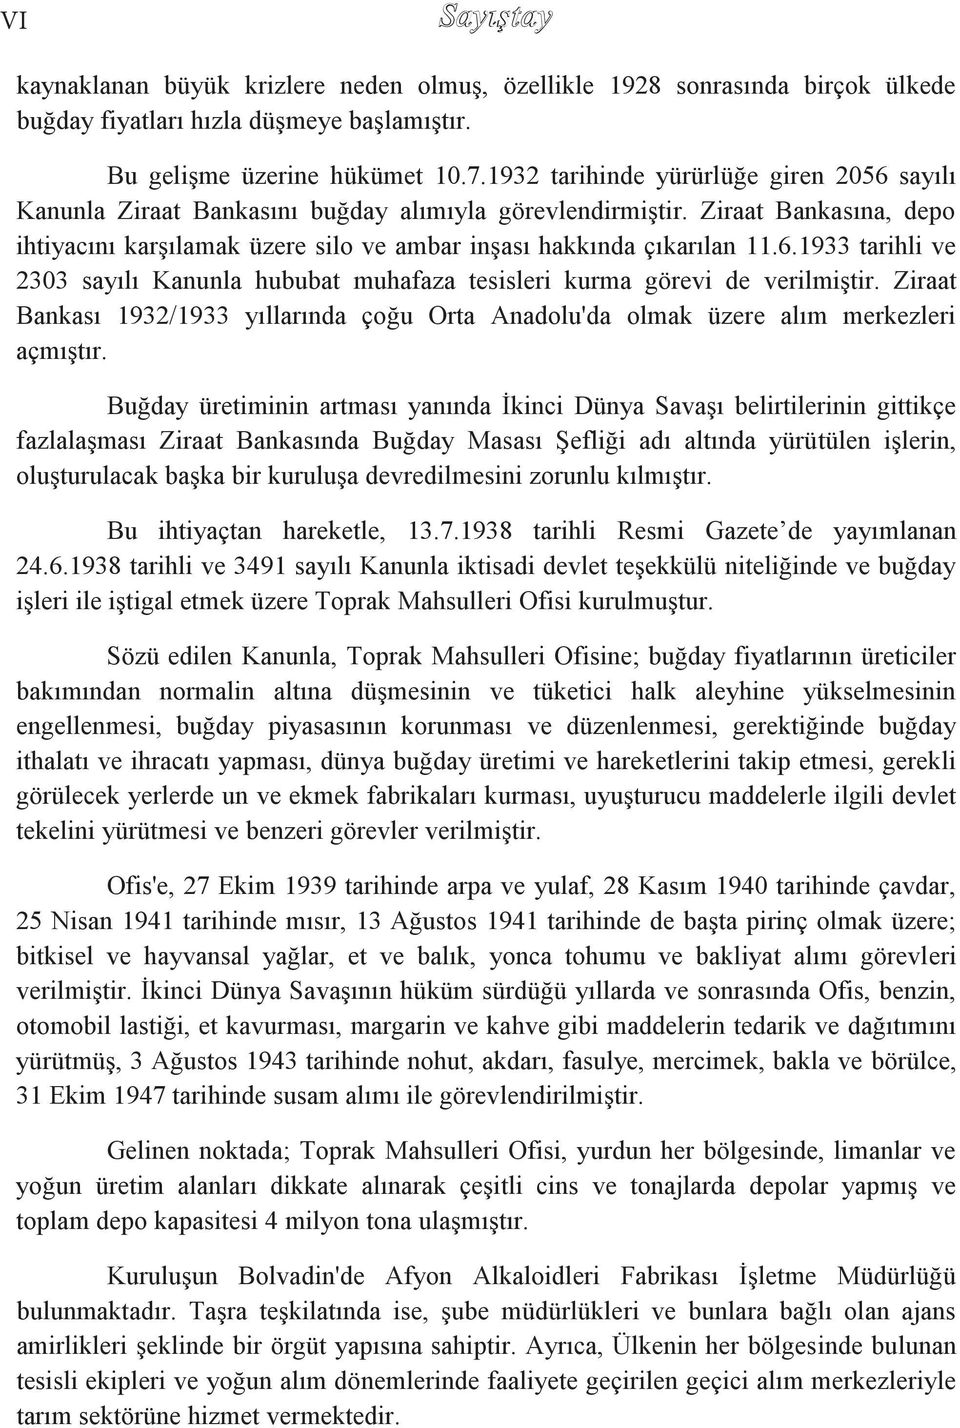 Ziraat Bankası 1932/1933 yıllarında çoğu Orta Anadolu'da olmak üzere alım merkezleri açmıģtır.